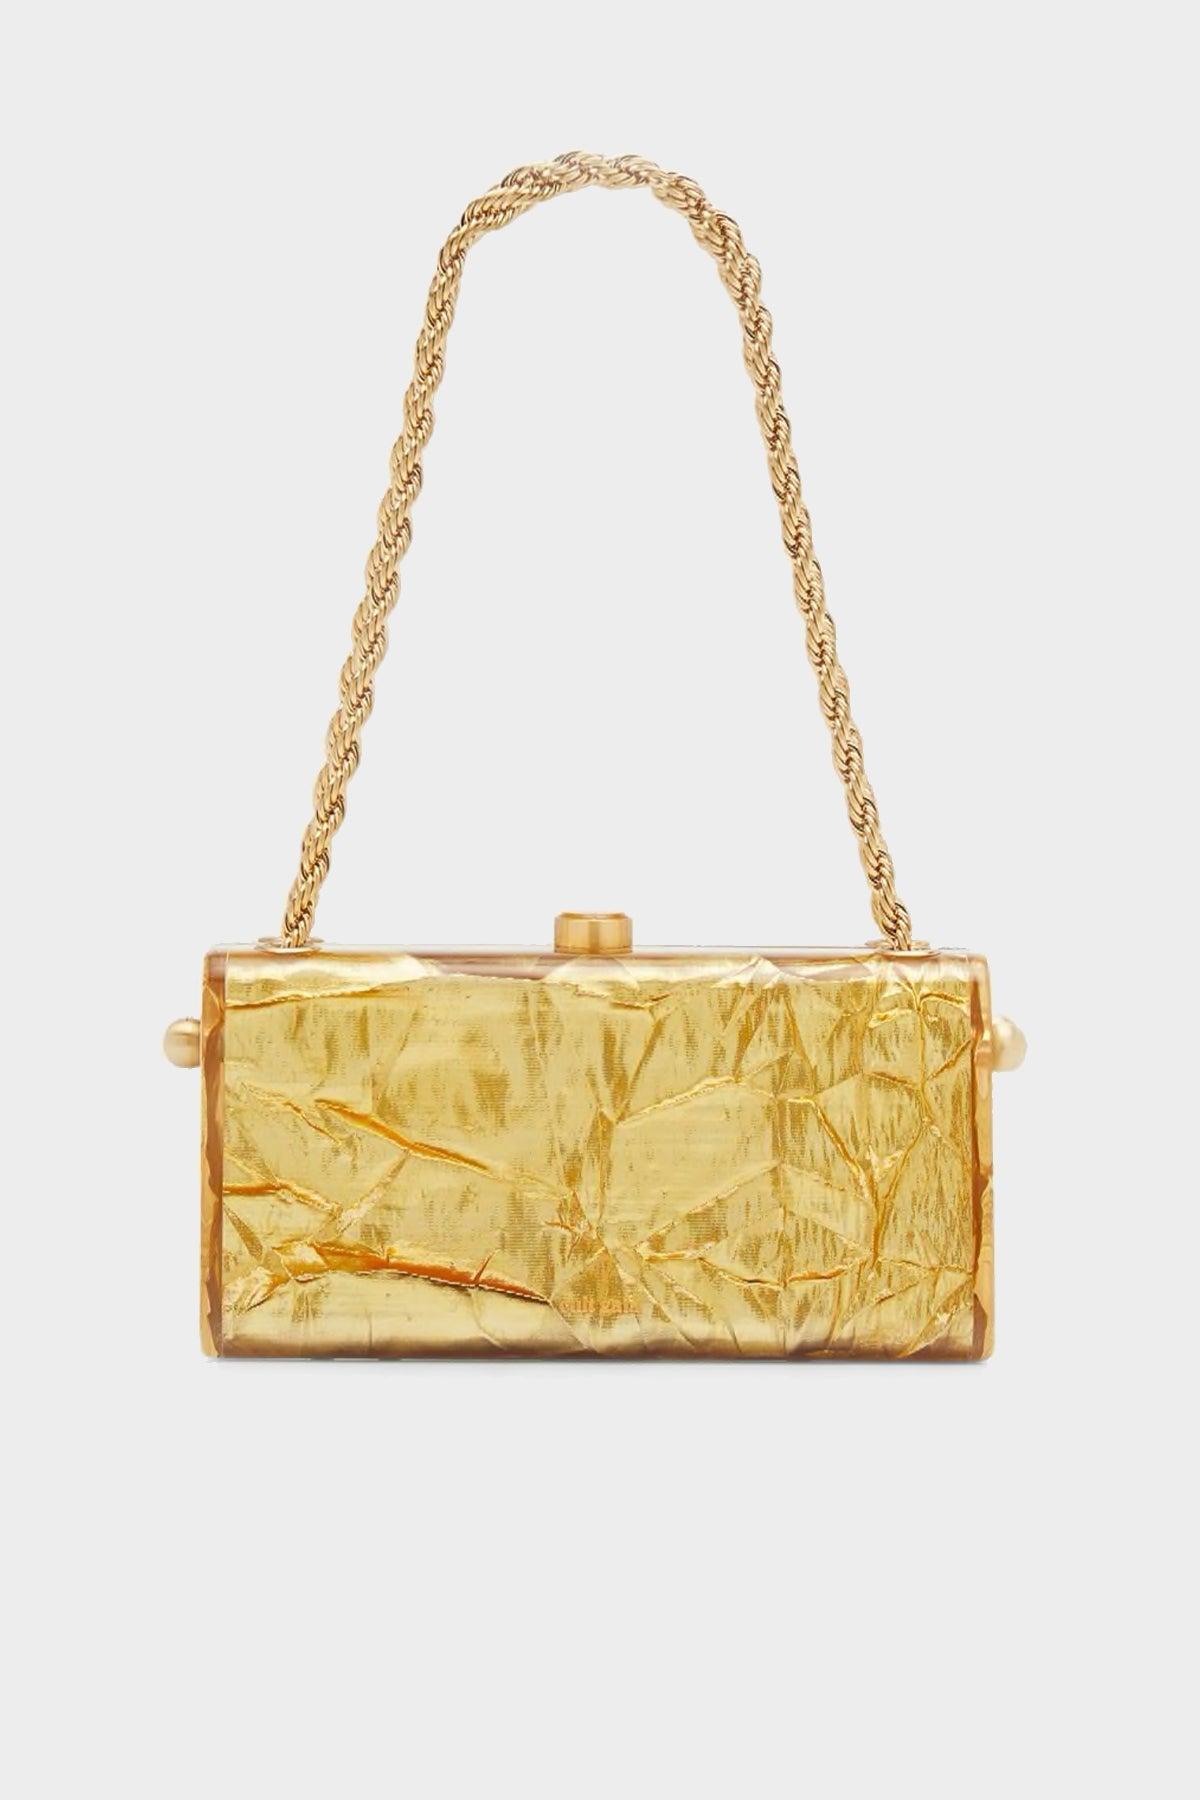 Cult Gaia Hajar Shoulder Bag In Gold in Yellow | Lyst